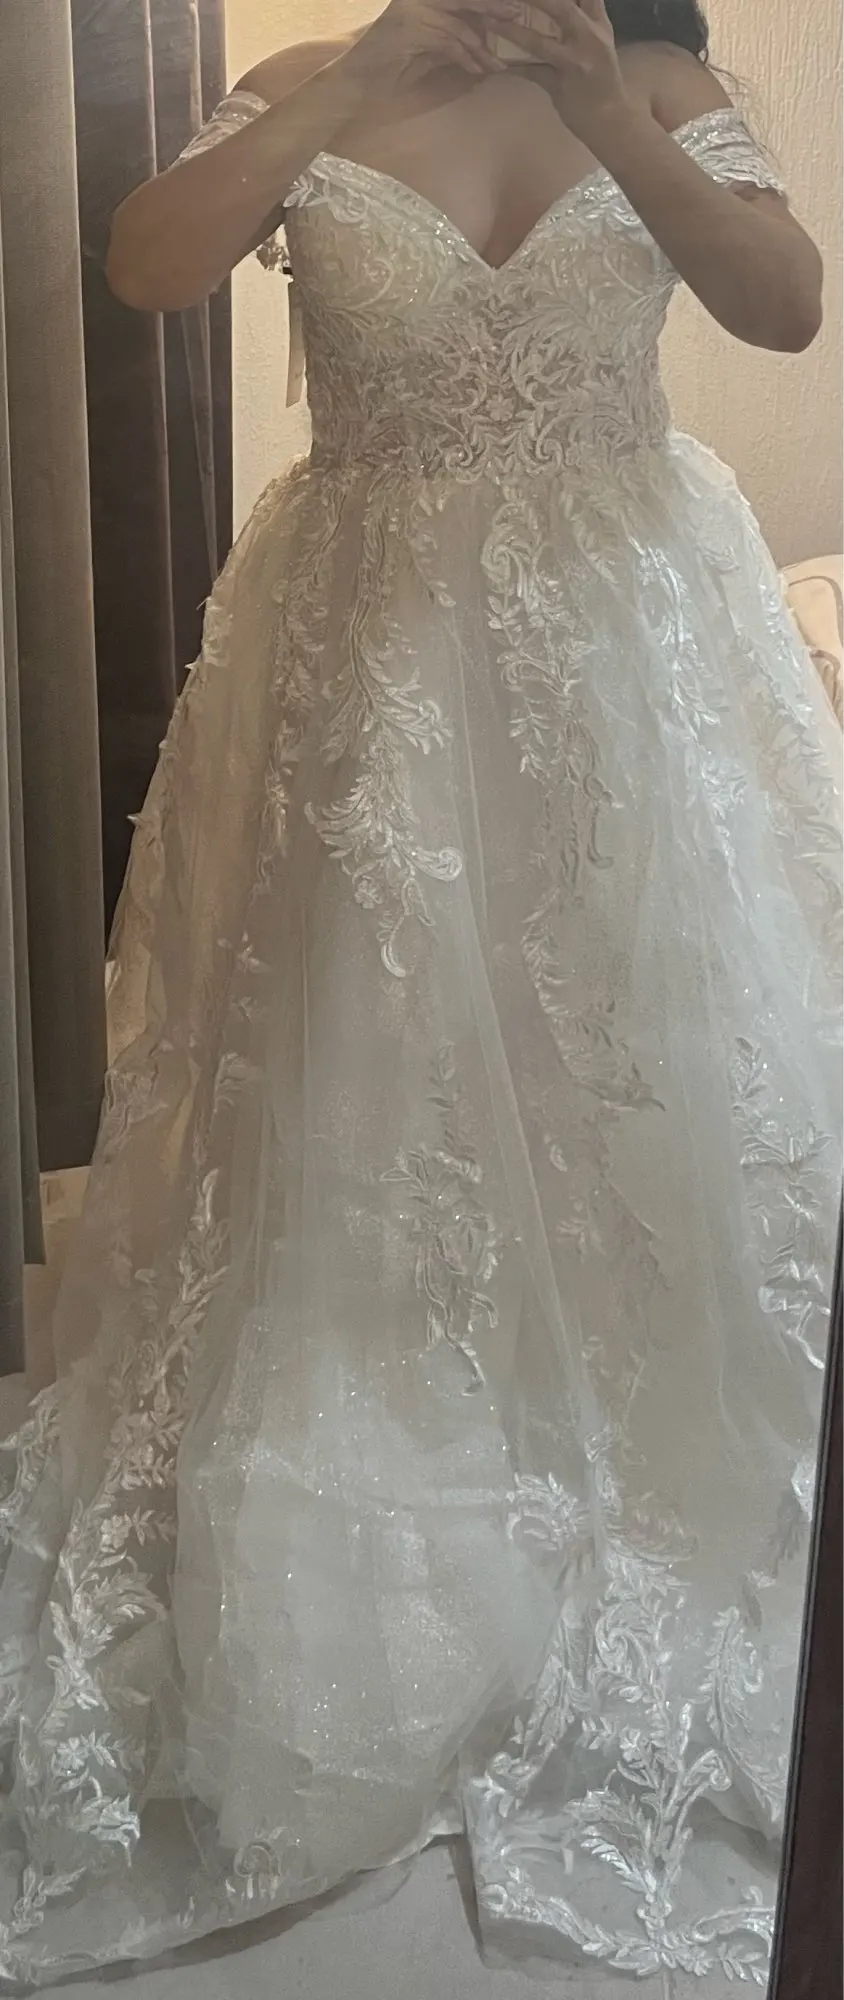 Chic robe de mariée bohème photo review